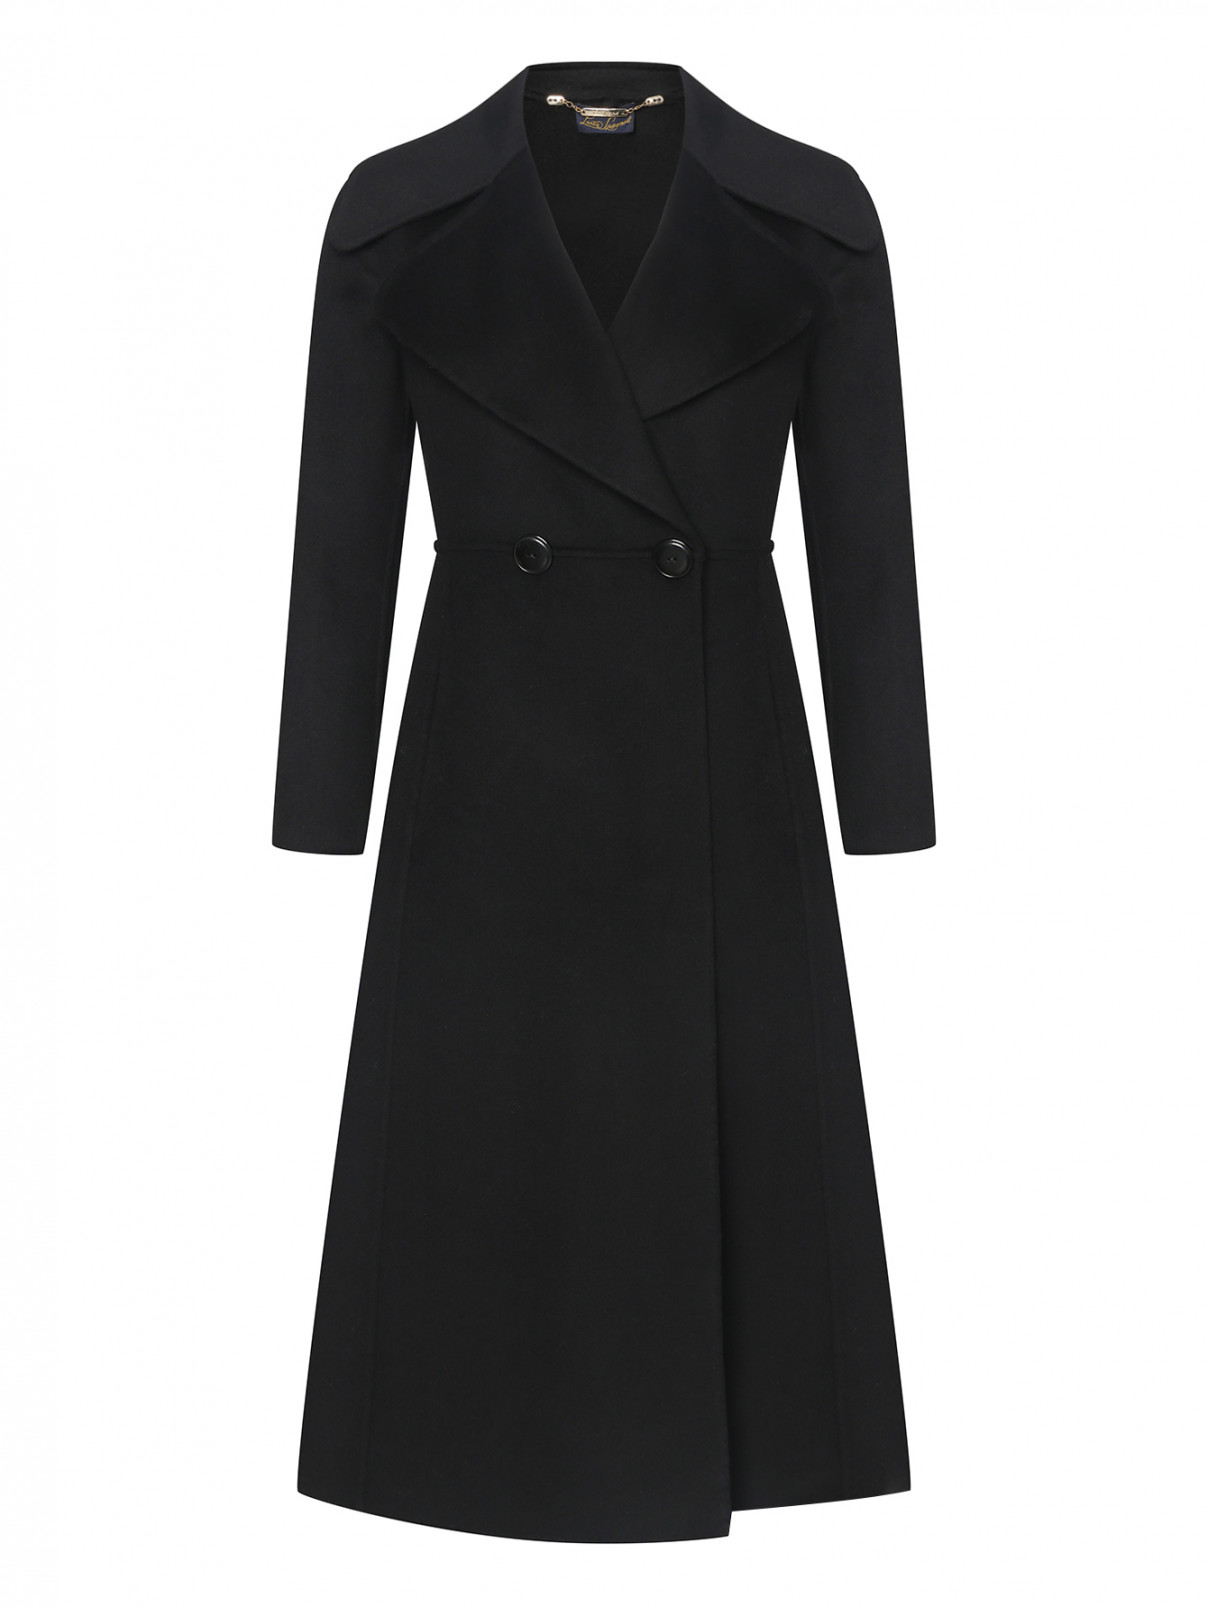 Пальто из шерсти приталенного кроя Luisa Spagnoli  –  Общий вид  – Цвет:  Черный